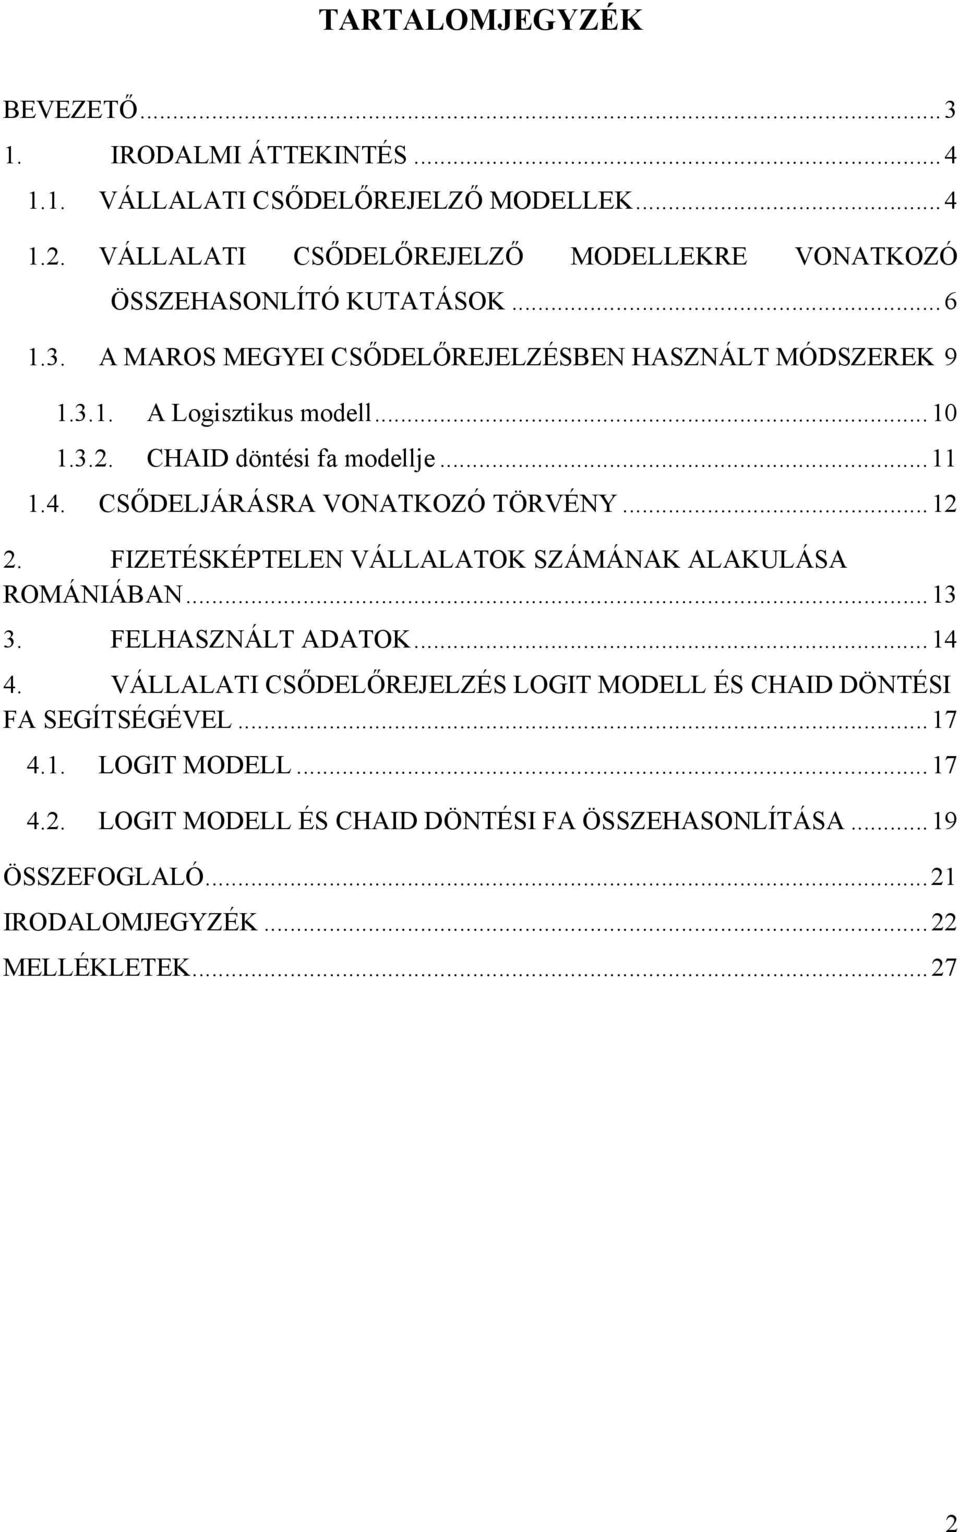 Vállalati csődelőrejelzés Logit modell és Chaid döntési fák segítségével a  Maros megyei vállalatok esetén - PDF Ingyenes letöltés